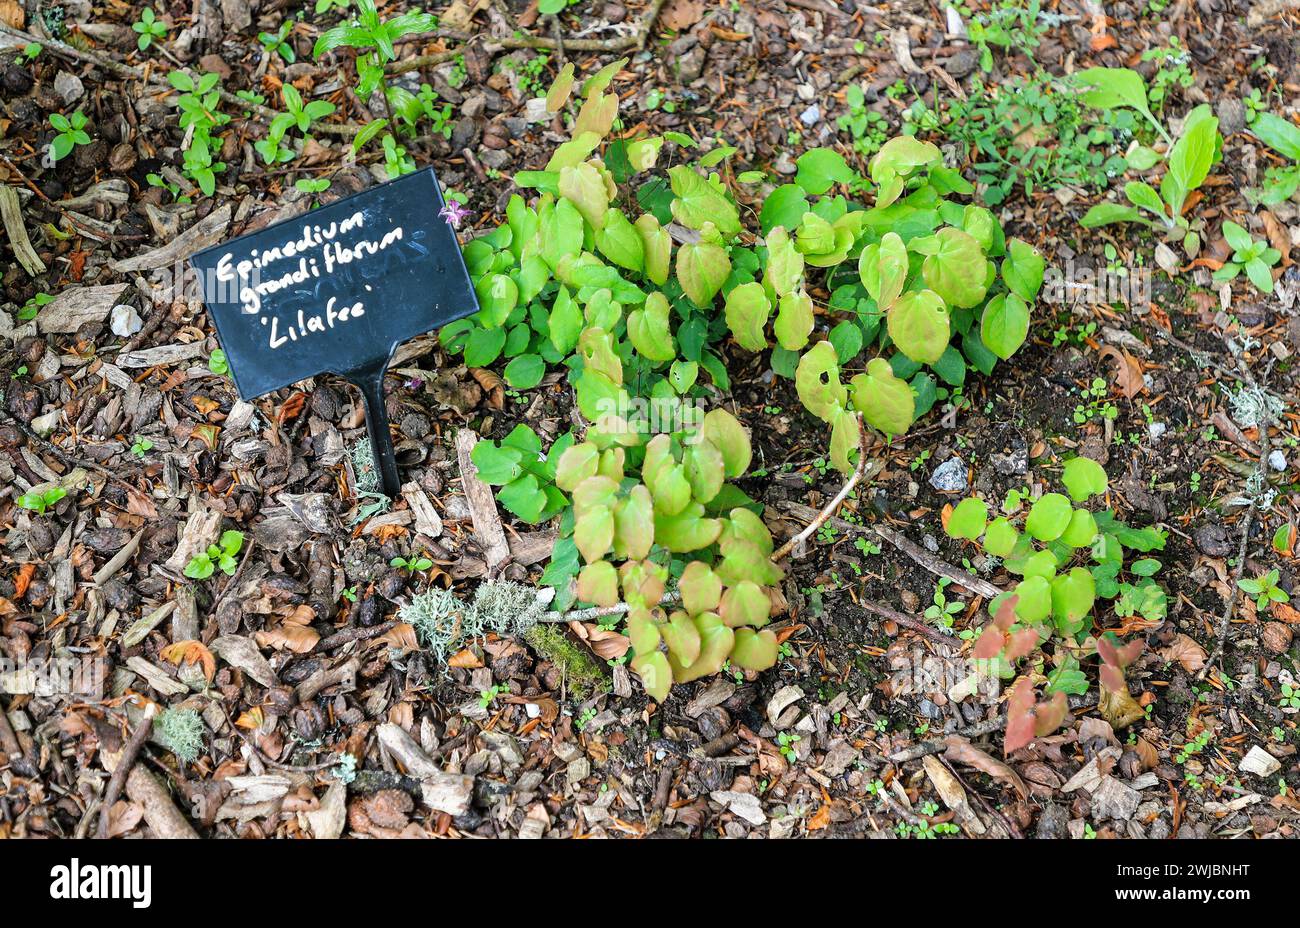 La grande barrenwort fiorita, o cappello da vescovo, pianta di copertura del terreno grandiflroum 'Lilafee' Foto Stock